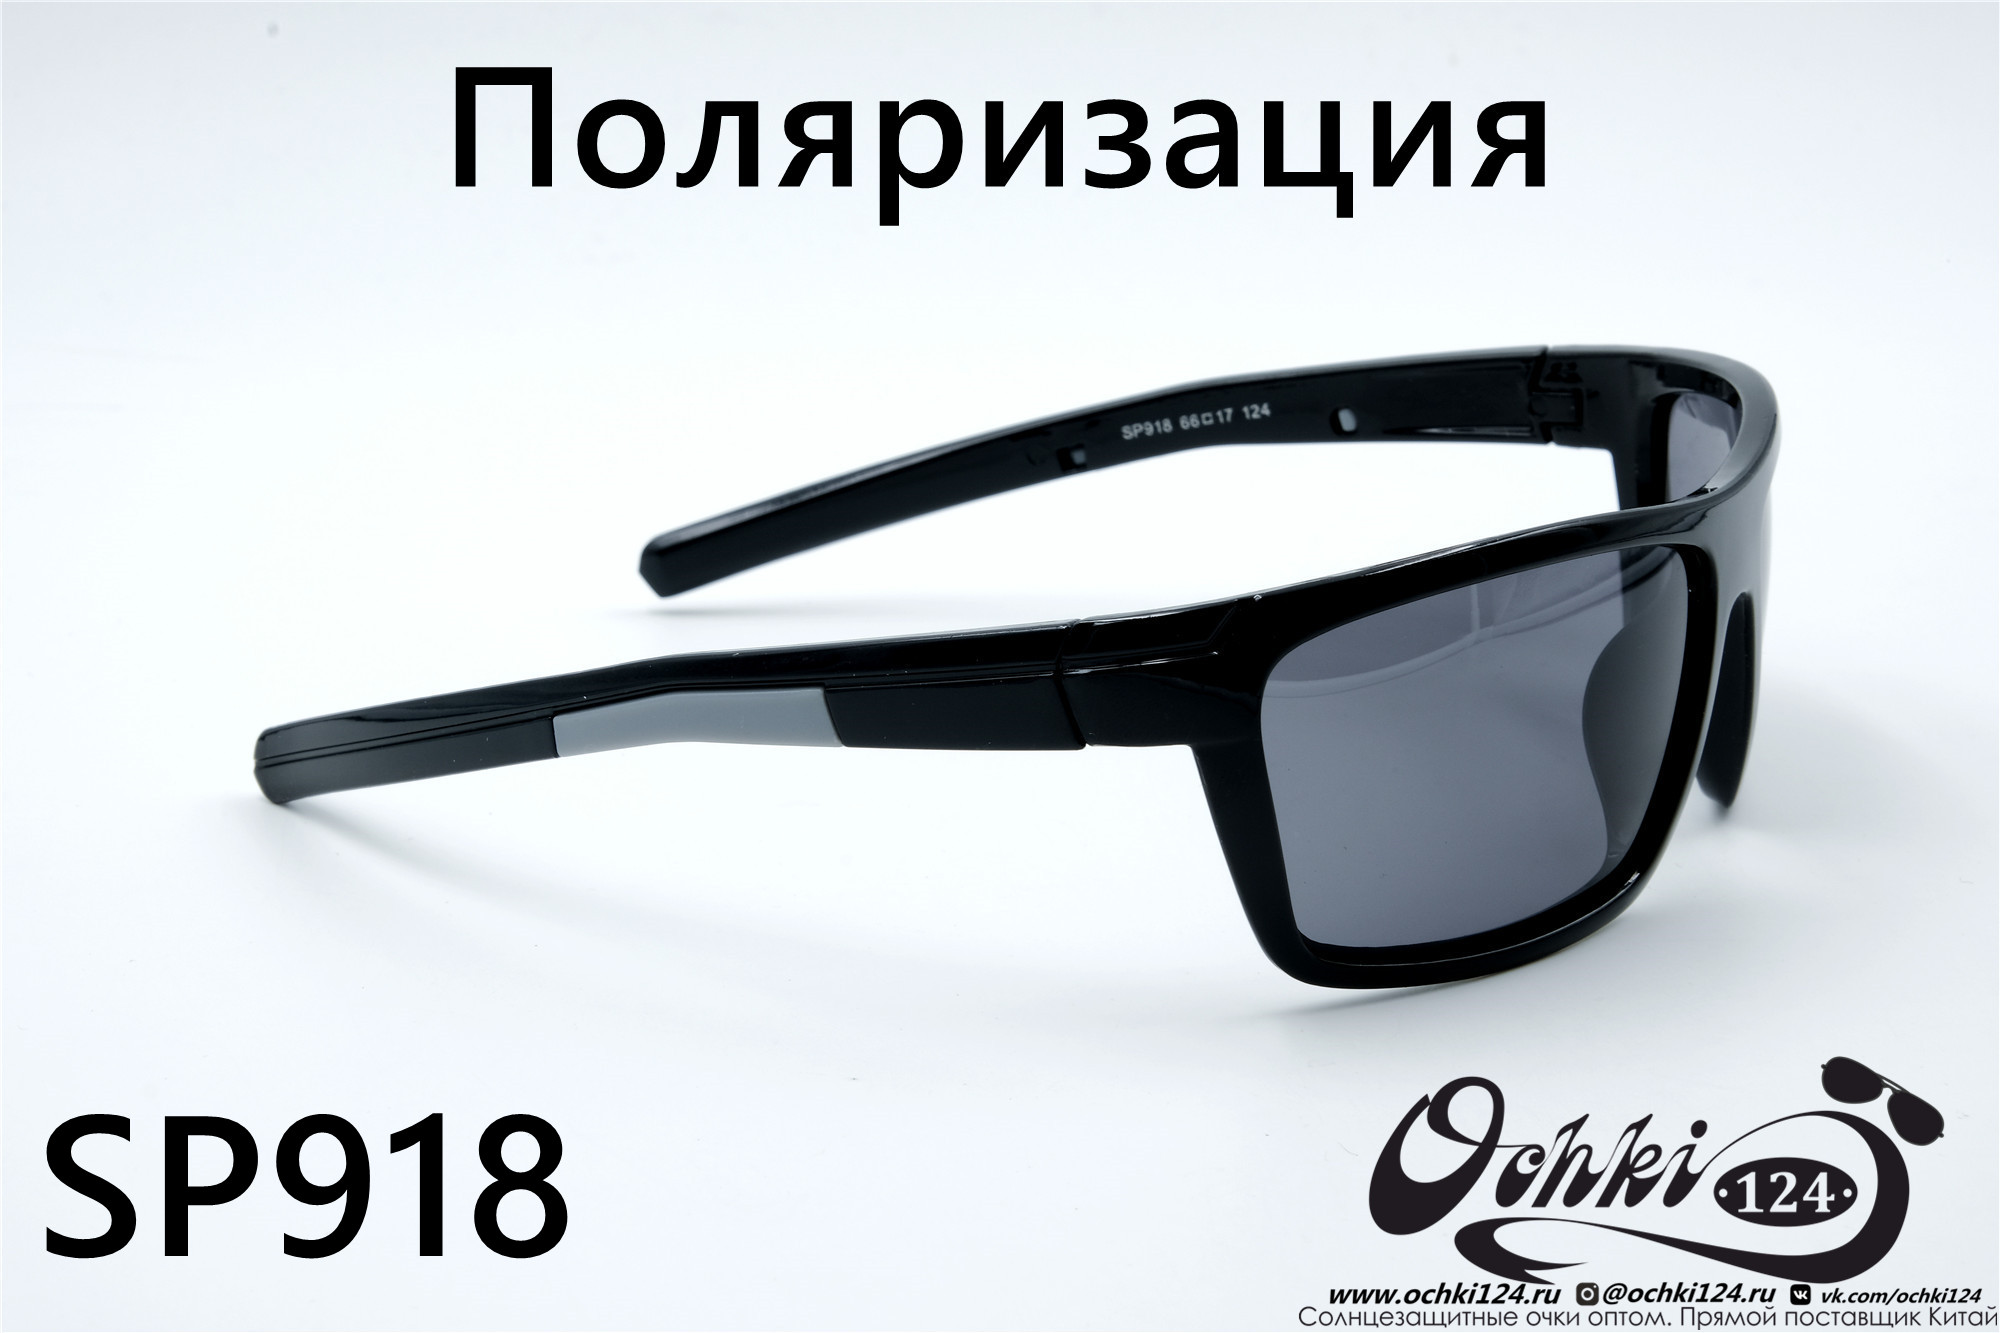  Солнцезащитные очки картинка 2022 Мужские Поляризованные Спорт Materice SP918-5 